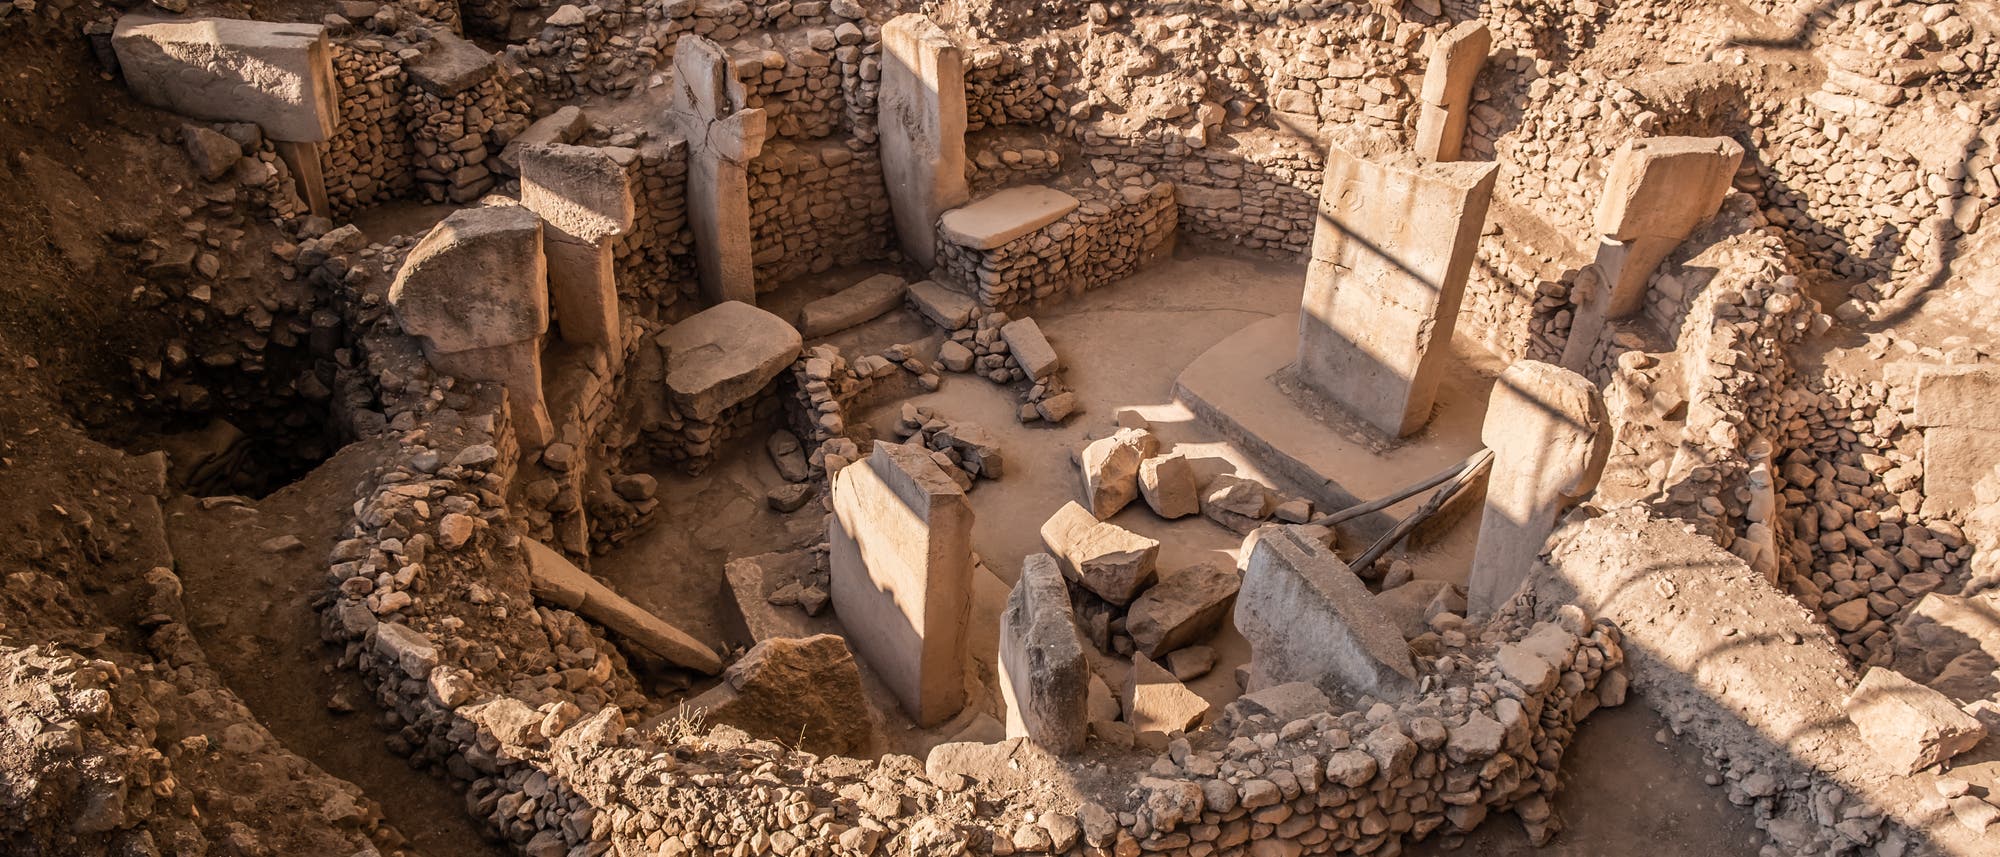 Die Monumente von Göbekli Tepe sind zirka 11 600 Jahre alt. Womöglich trafen sich dort einst Gruppen von Jägern und verzehrten reichlich Getreidegerichte - und Bier.